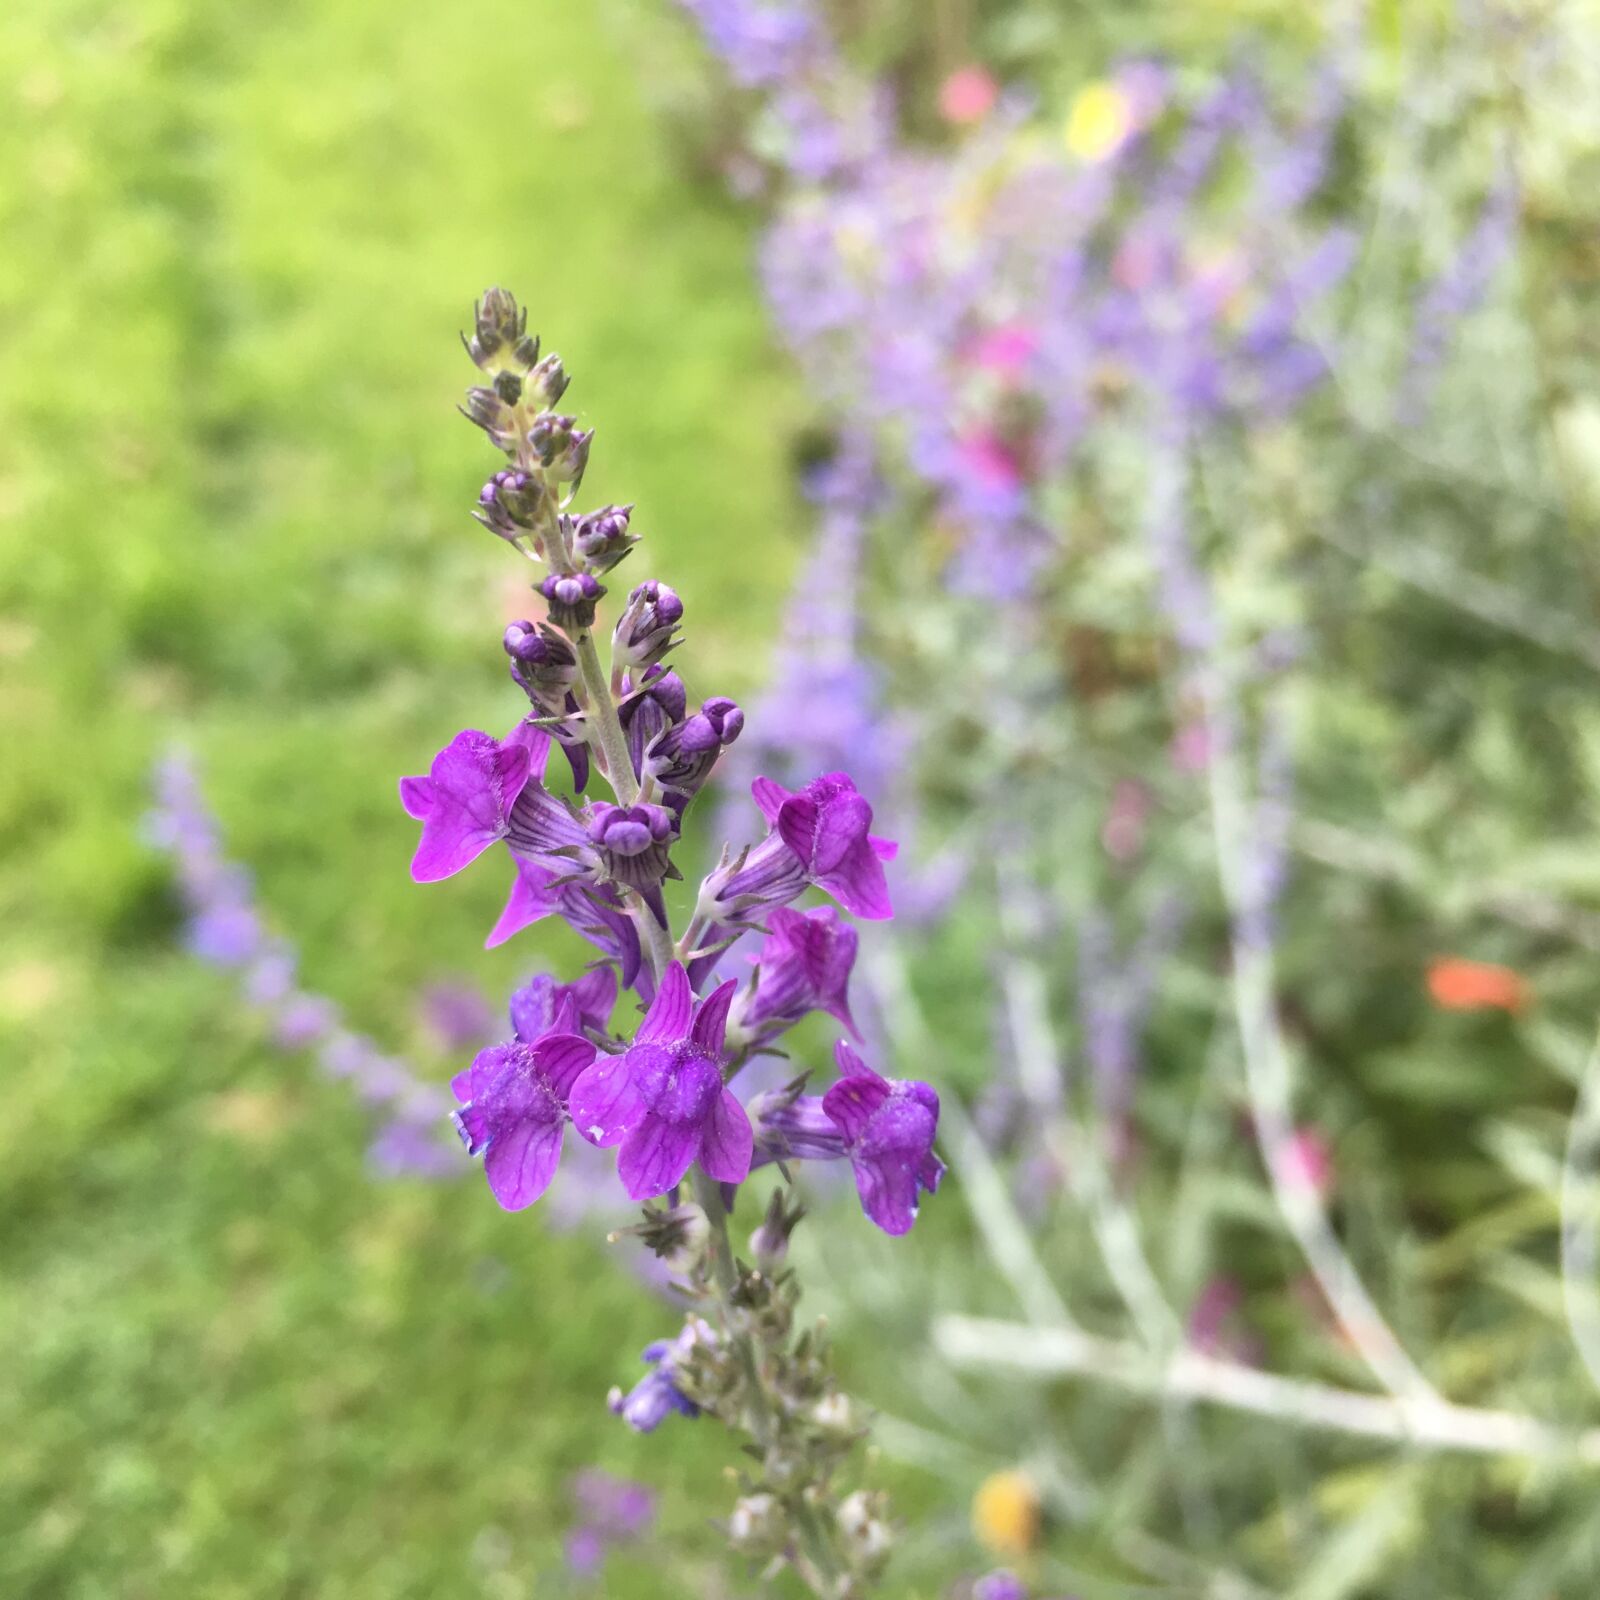 Apple iPad Pro sample photo. Flowers, purple, garden photography